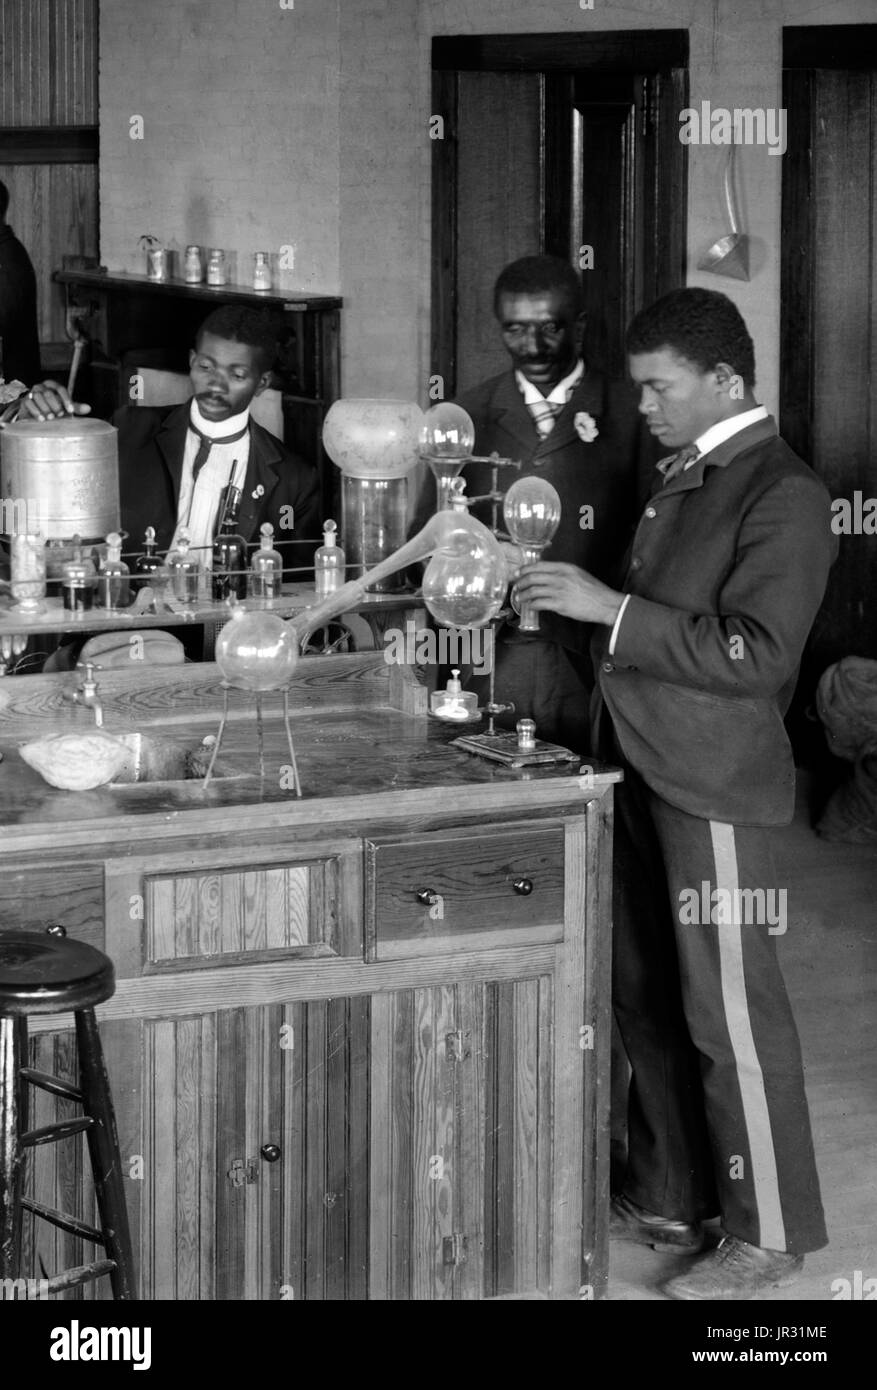 Laboratorio de Química/aula con alumnos del Instituto Tuskegee Tuskegee, Alabama. George Washington Carver está en segundo lugar desde la derecha, mirando hacia la parte delantera (enmarcada por puerta). George Washington Carver (1864 - 5 de enero de 1943) era un científico afroamericano, botánico, educador e inventor nacido en esclavitud. En 1891 asistió a la botánica y estudió en la Universidad Estatal de Iowa Agricultural College donde fue el primer alumno negro, y más tarde enseñó como el primer miembro de la facultad del negro. Su reputación se basa en su investigación y promoción de cultivos alternativos al algodón, tales como el maní, la soya y el sw Foto de stock